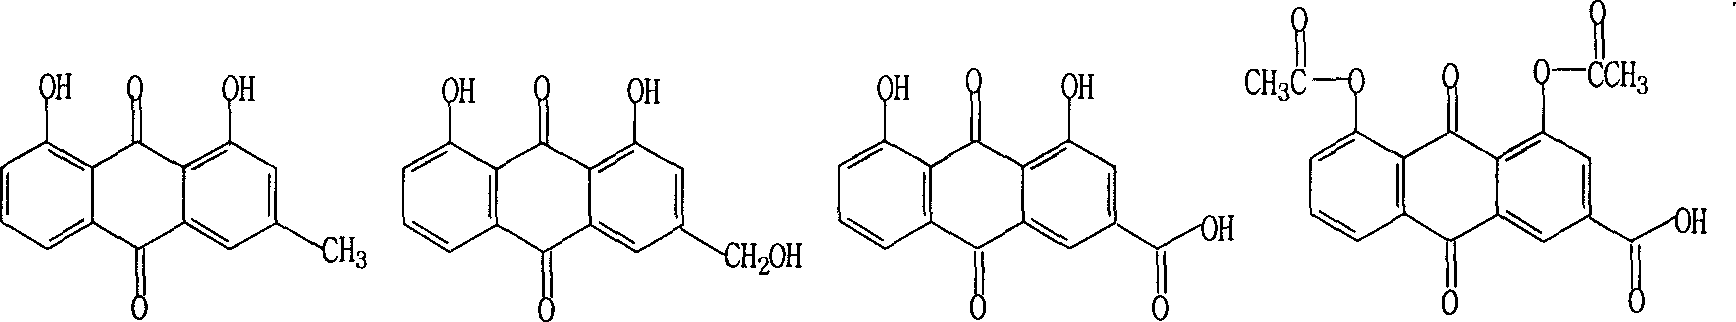 Synthesis method of rhein and Diacerein